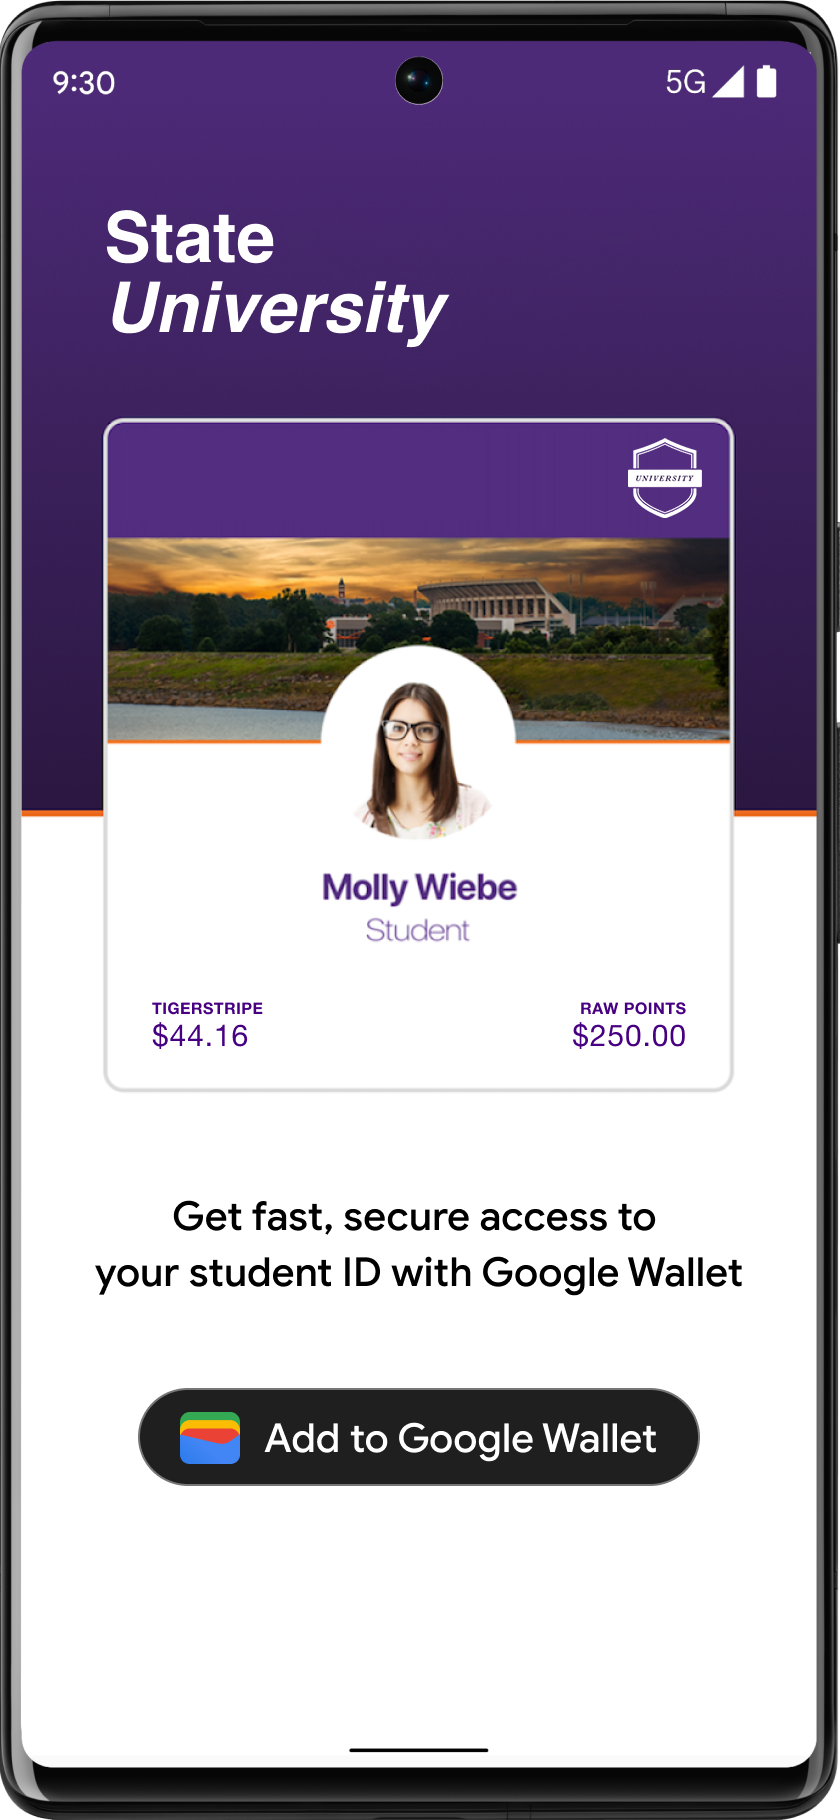 ปุ่มเพิ่มลงใน Google Wallet แสดงให้เห็นอย่างเด่นชัดในแอปบัญชีนักเรียน